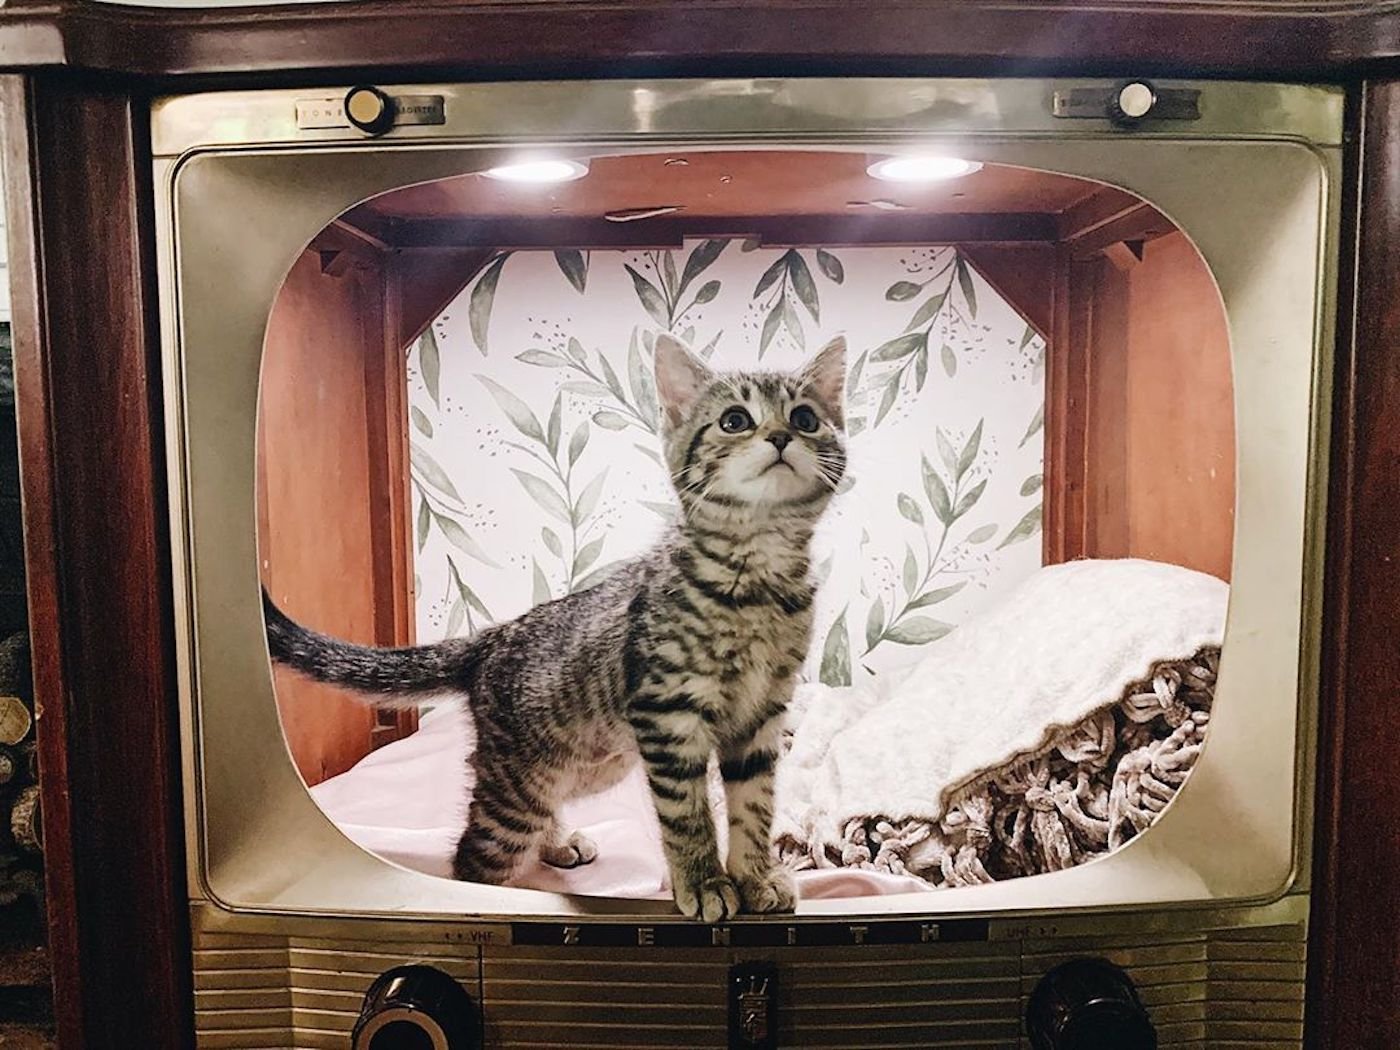 Аквариум для кота внутри. Домик для кошки телевизор. Домик для кошки из телевизора. Домик для кошки из старого телевизора. Кошка на телевизоре.